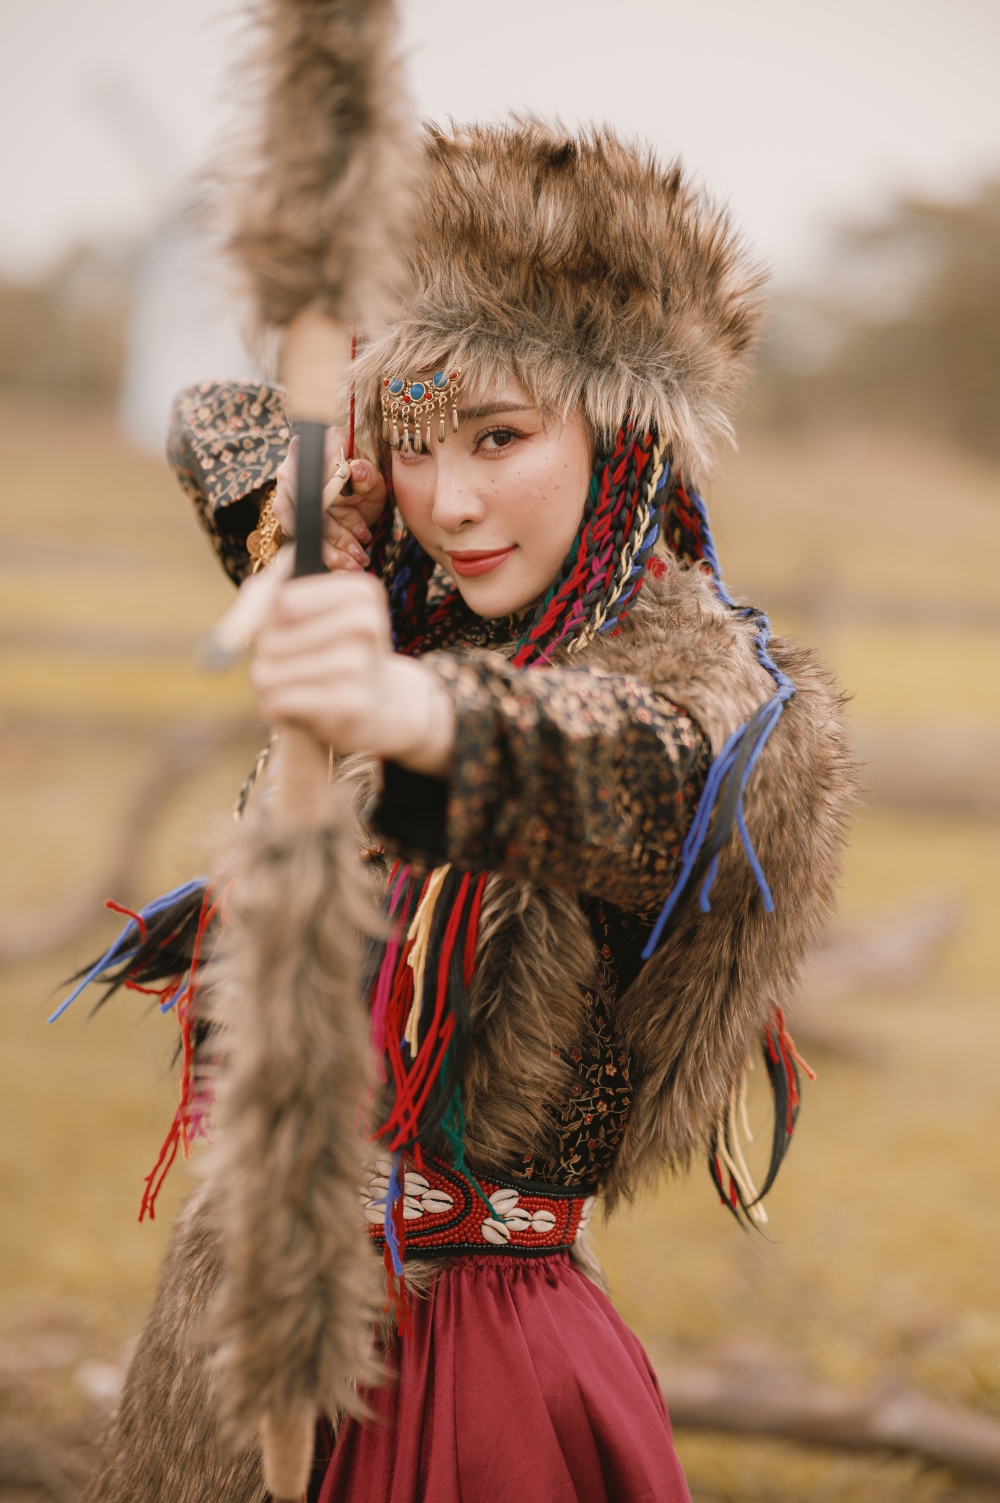 Quỳnh Nga hoá mỹ nhân Mông Cổ trên thảo nguyên